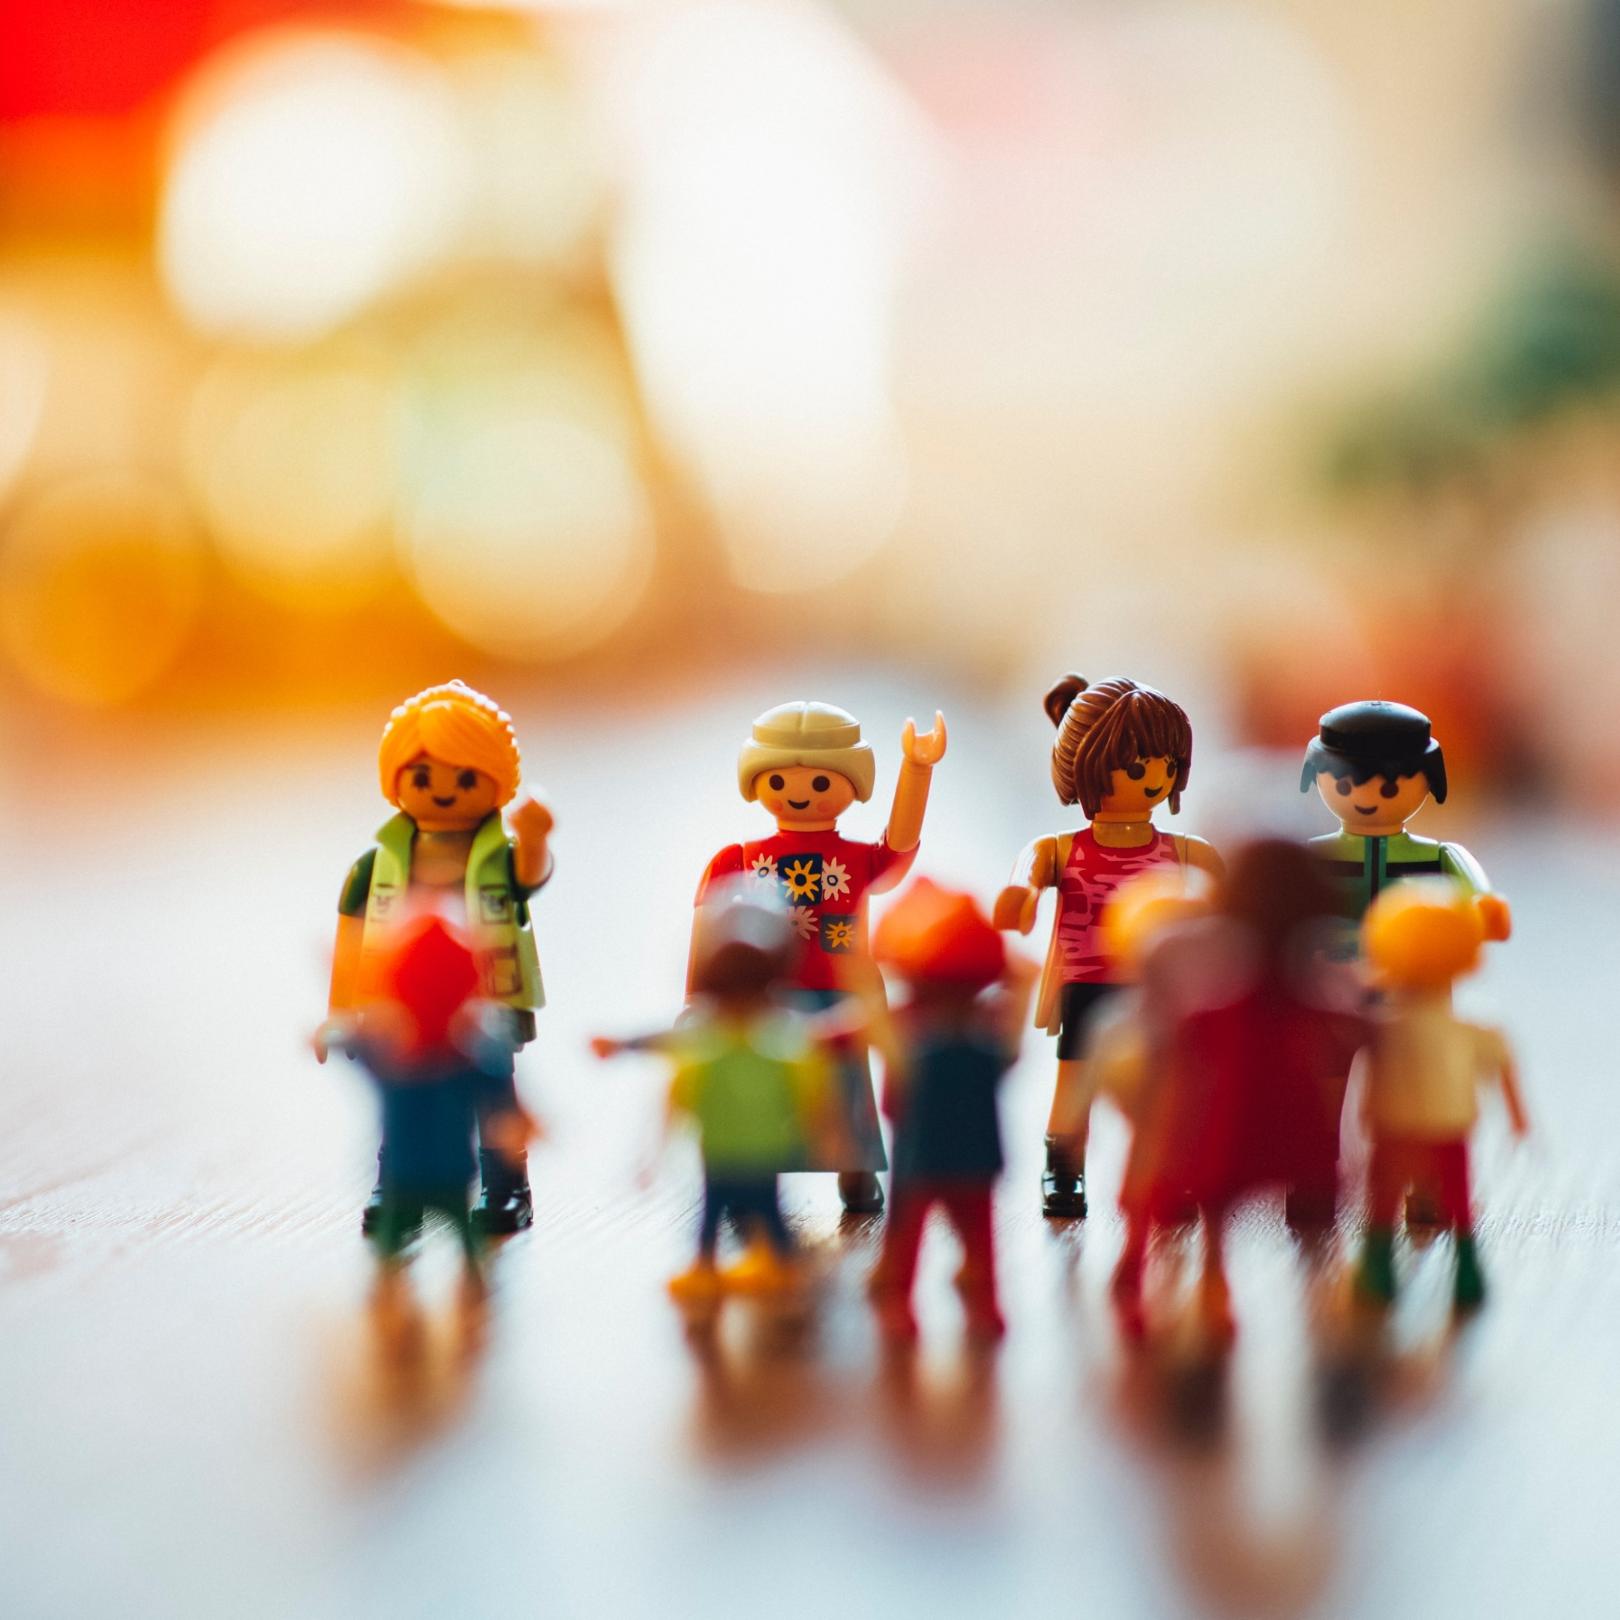 Man sieht eine Gruppe Playmobilmenschen zusammen stehend